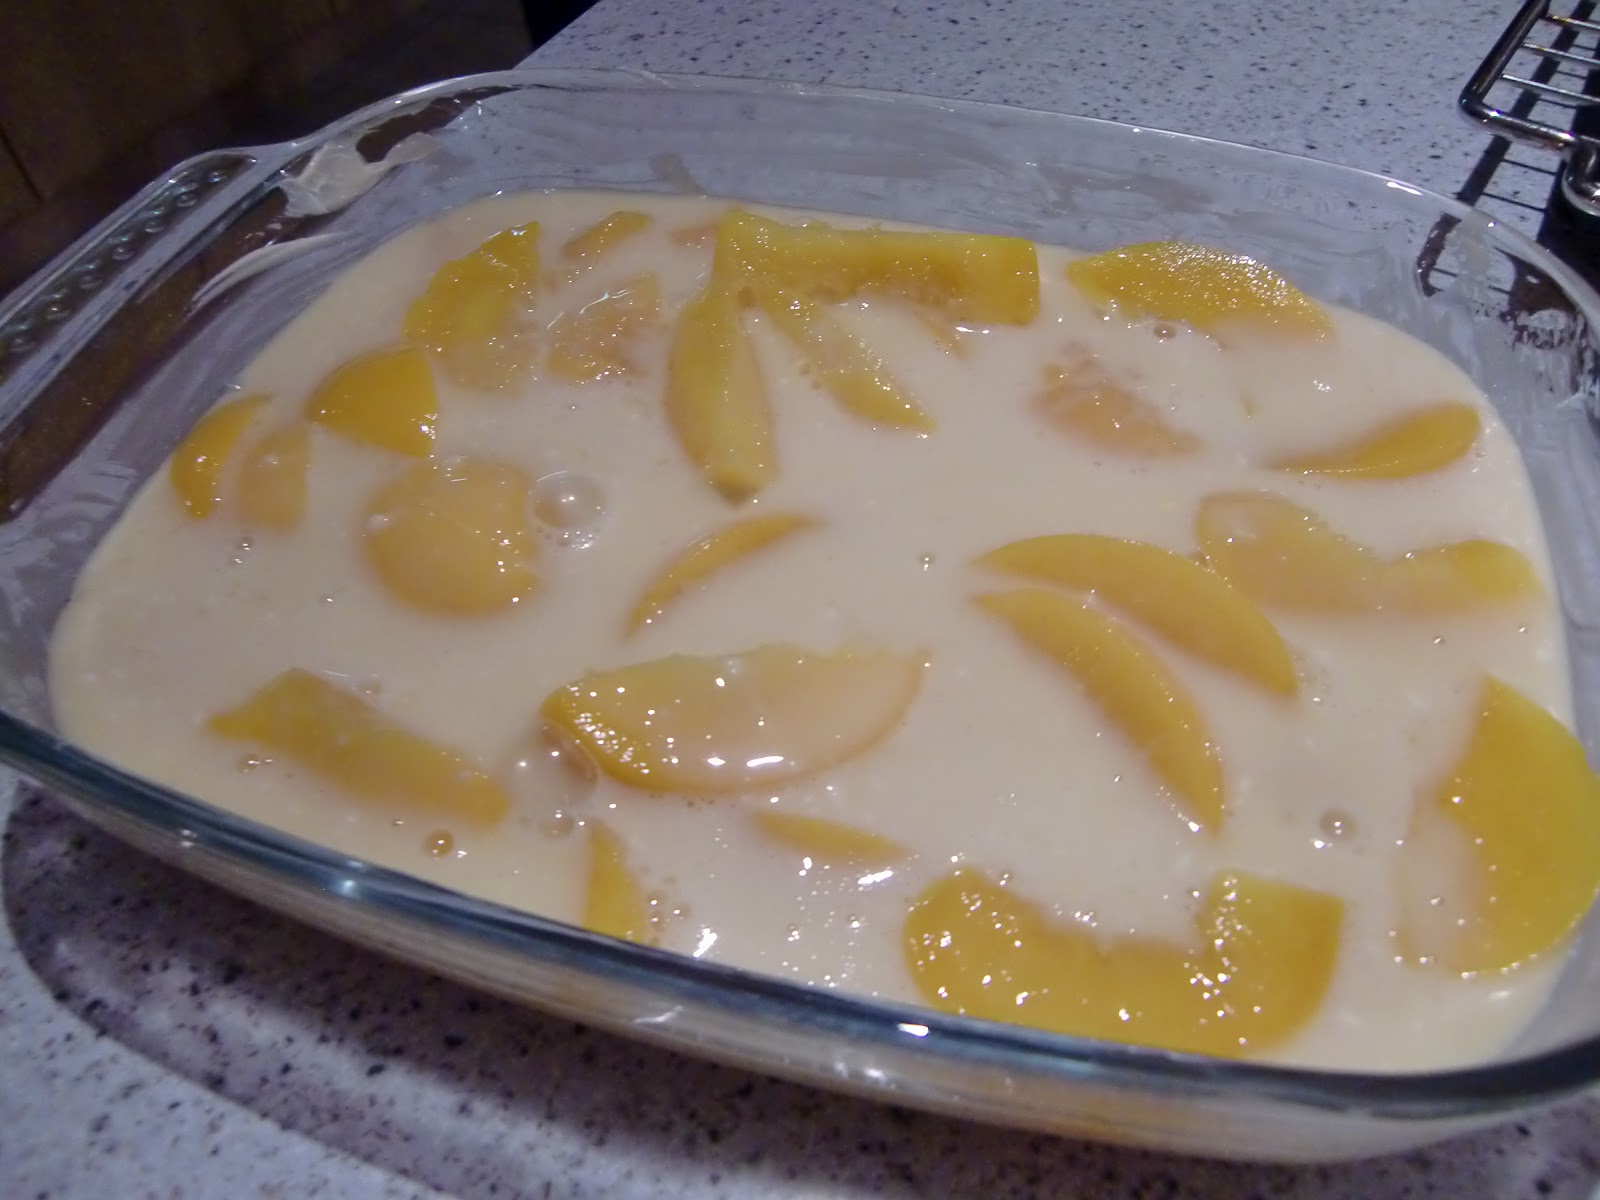 La vie gourmande: Pfirsich-Auflauf mit Vanillesauce